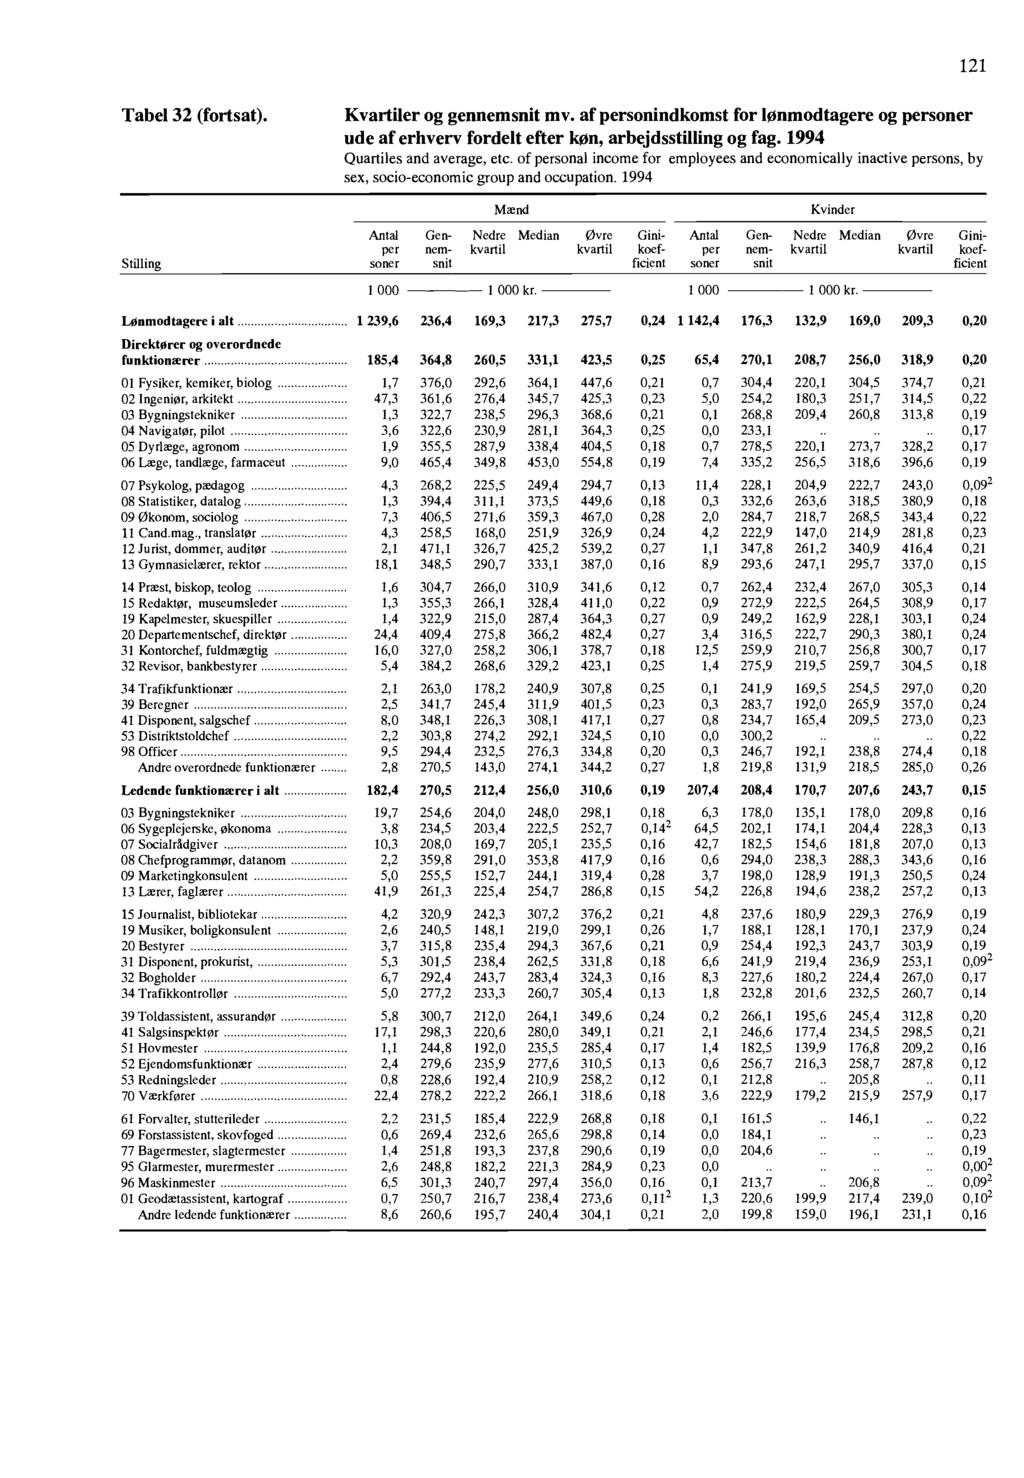 121 Tabel 32 (fortsat) Kvartiler og gennemsnit mv of personindkomst for lonmodtagere og personer ude of erhvery fordelt efter kon, arbejdsstilling og fag 1994 Quartiles and average, etc of personal